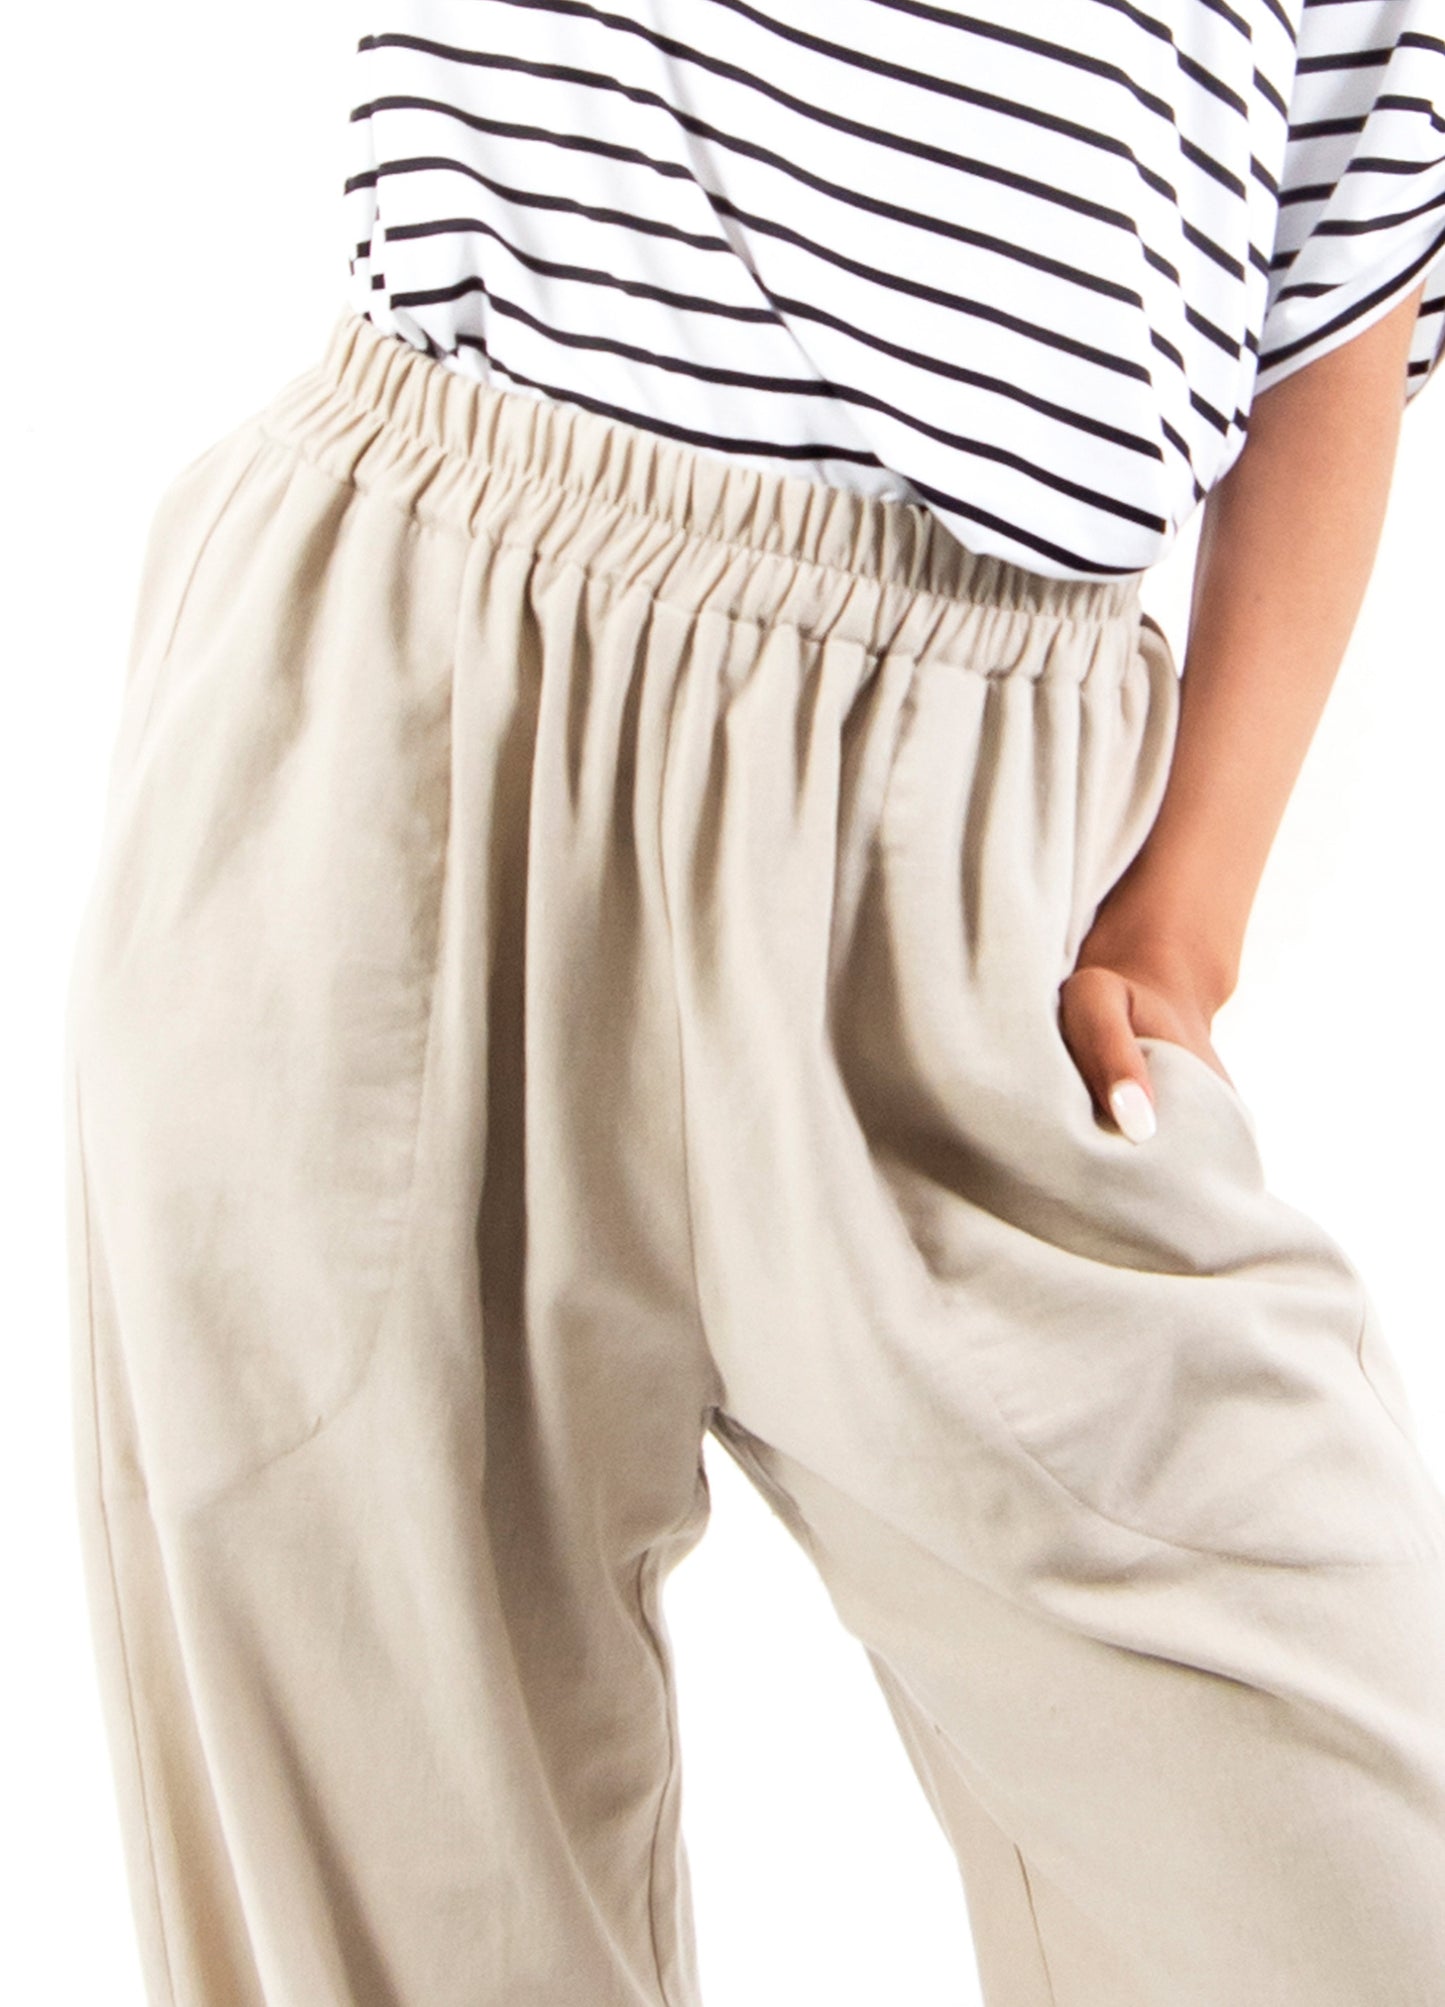 Sophie Lantern Trousers in Oatmeal